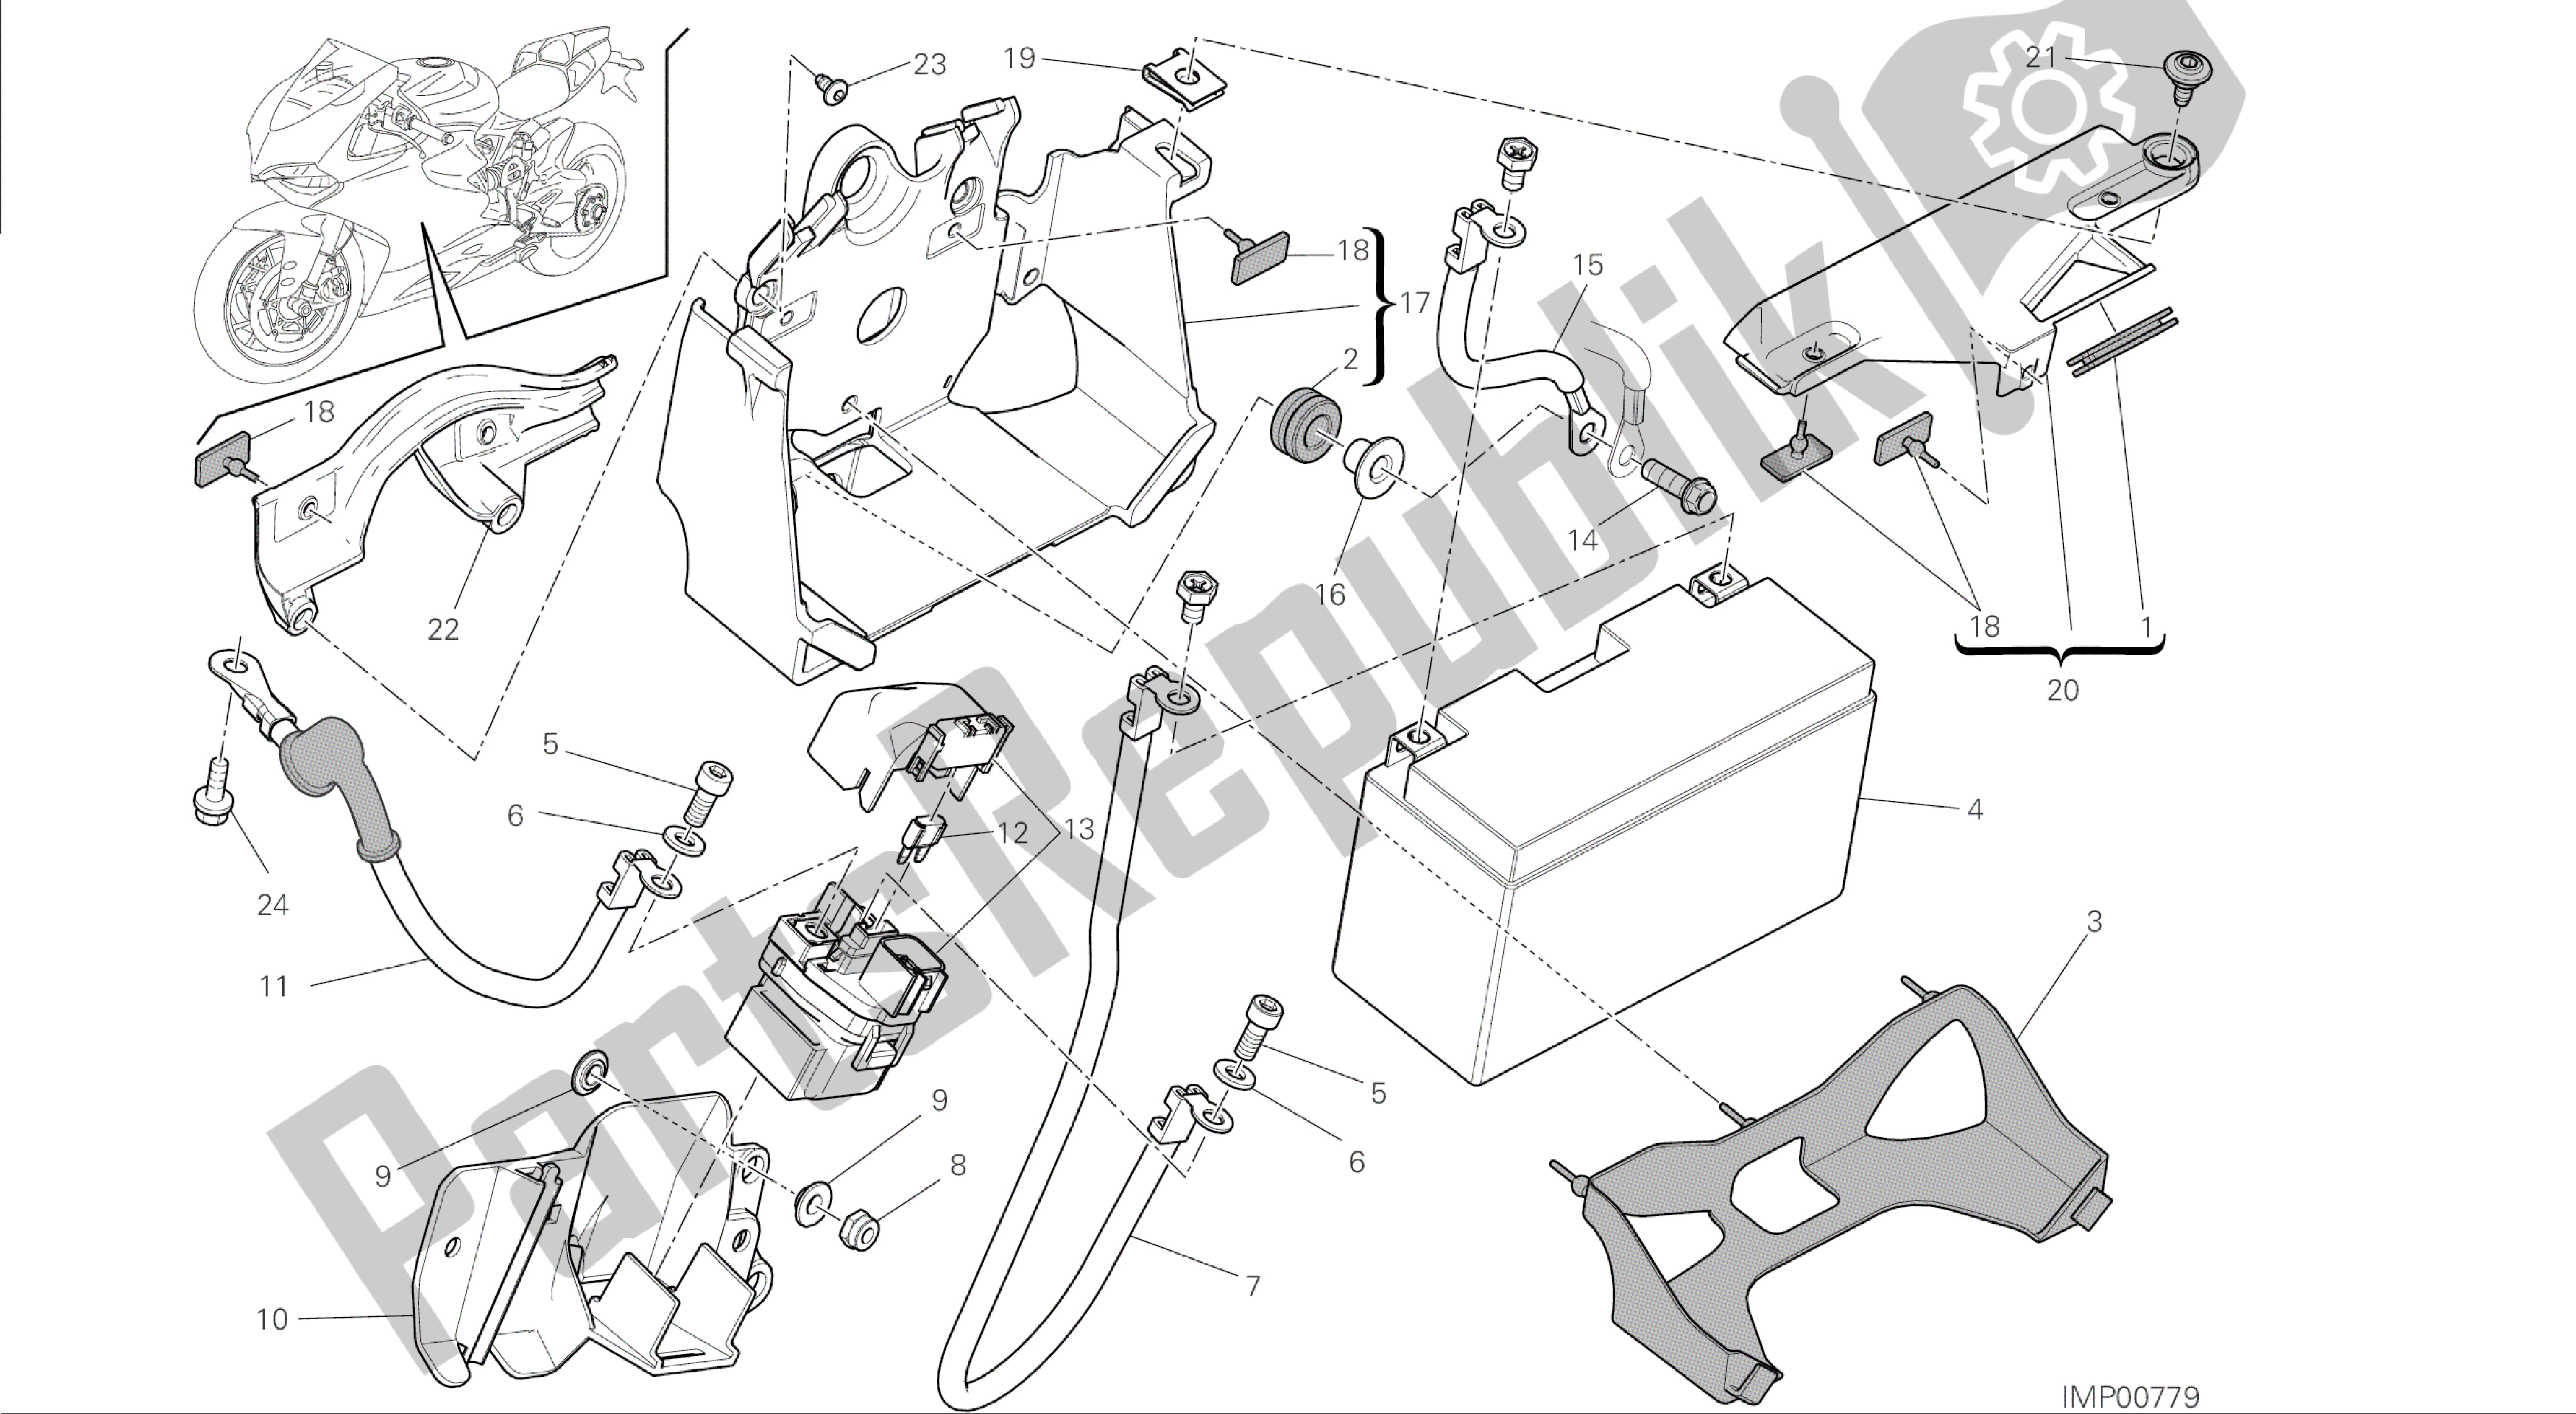 Tutte le parti per il Disegno 18a - Portabatterie [mod: 1199 Abs; Xst: Aus, Bra, Chn, Eur, Fra, Jap] Group Electric del Ducati Panigale ABS 1199 2014